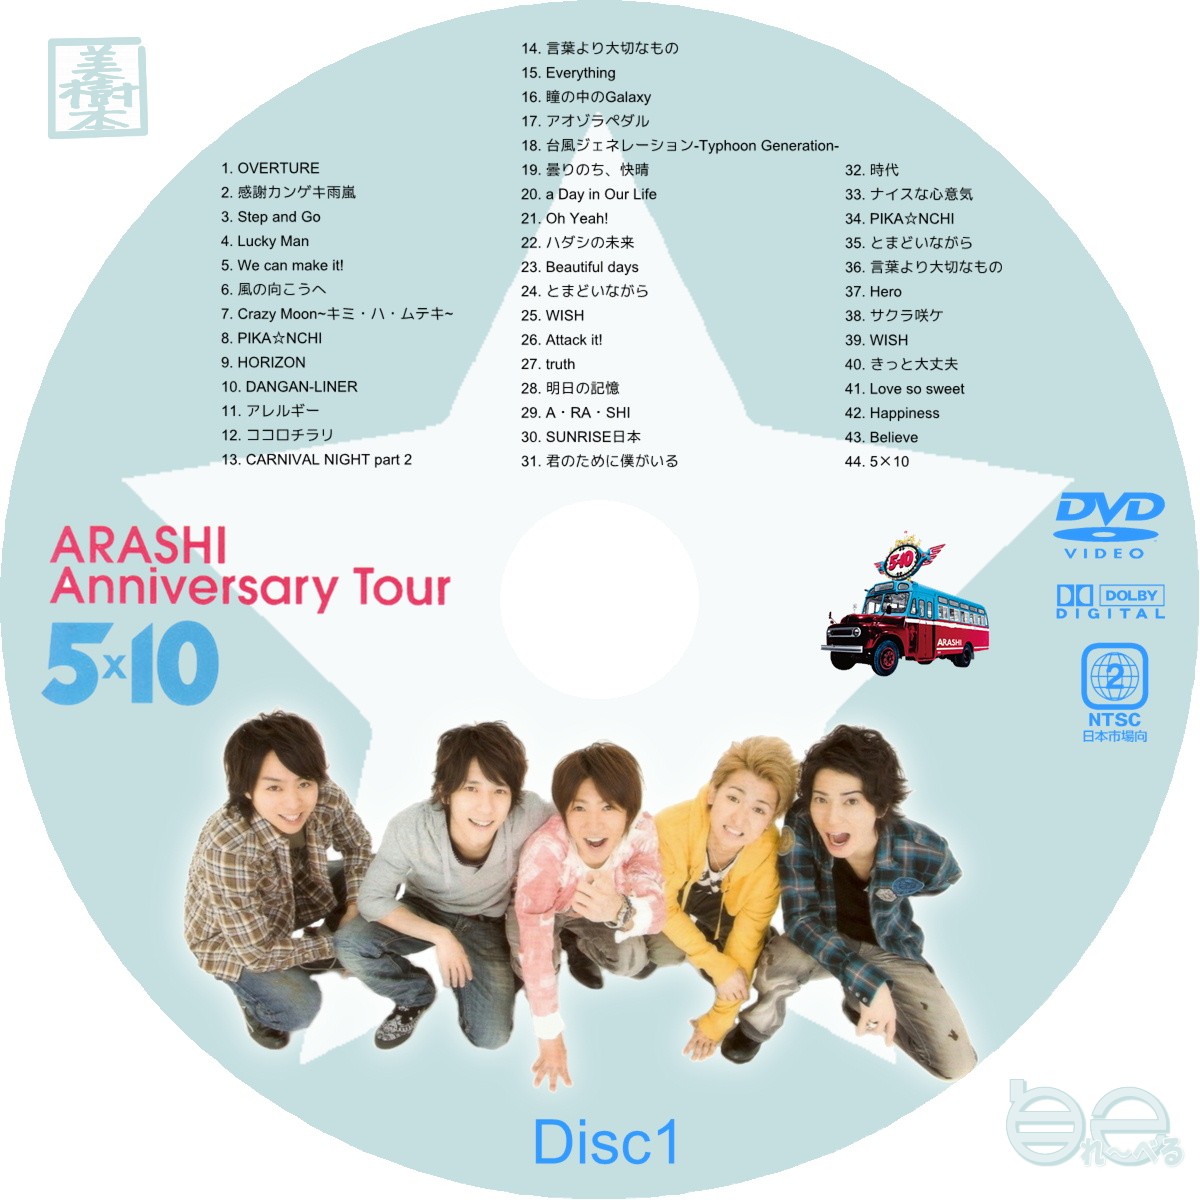 嵐 arashi anniversary tour 5×20 5×10 セット